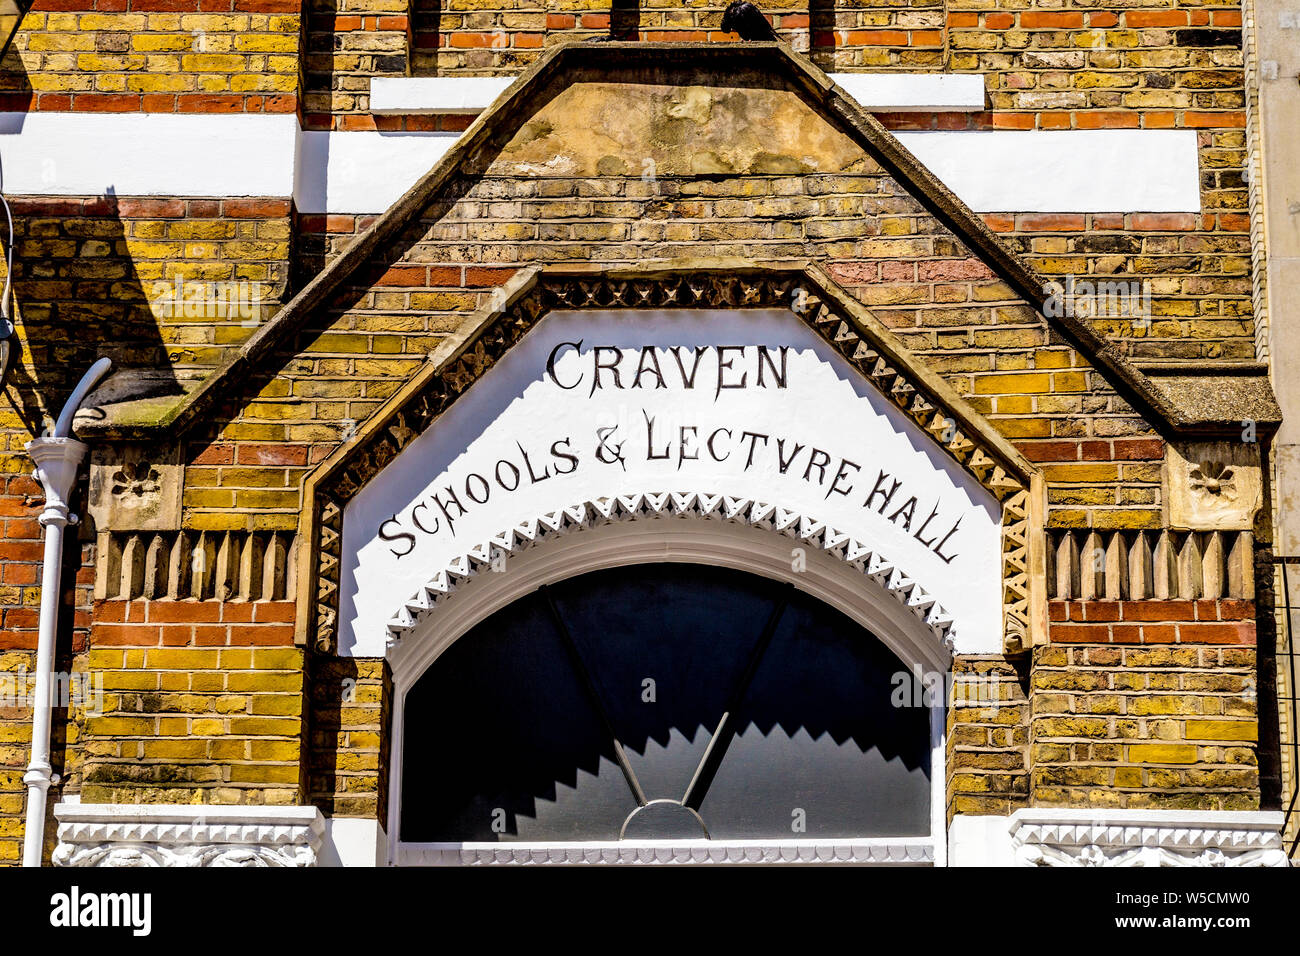 Craven, l'école, salle de conférence, Soho, London, UK Banque D'Images